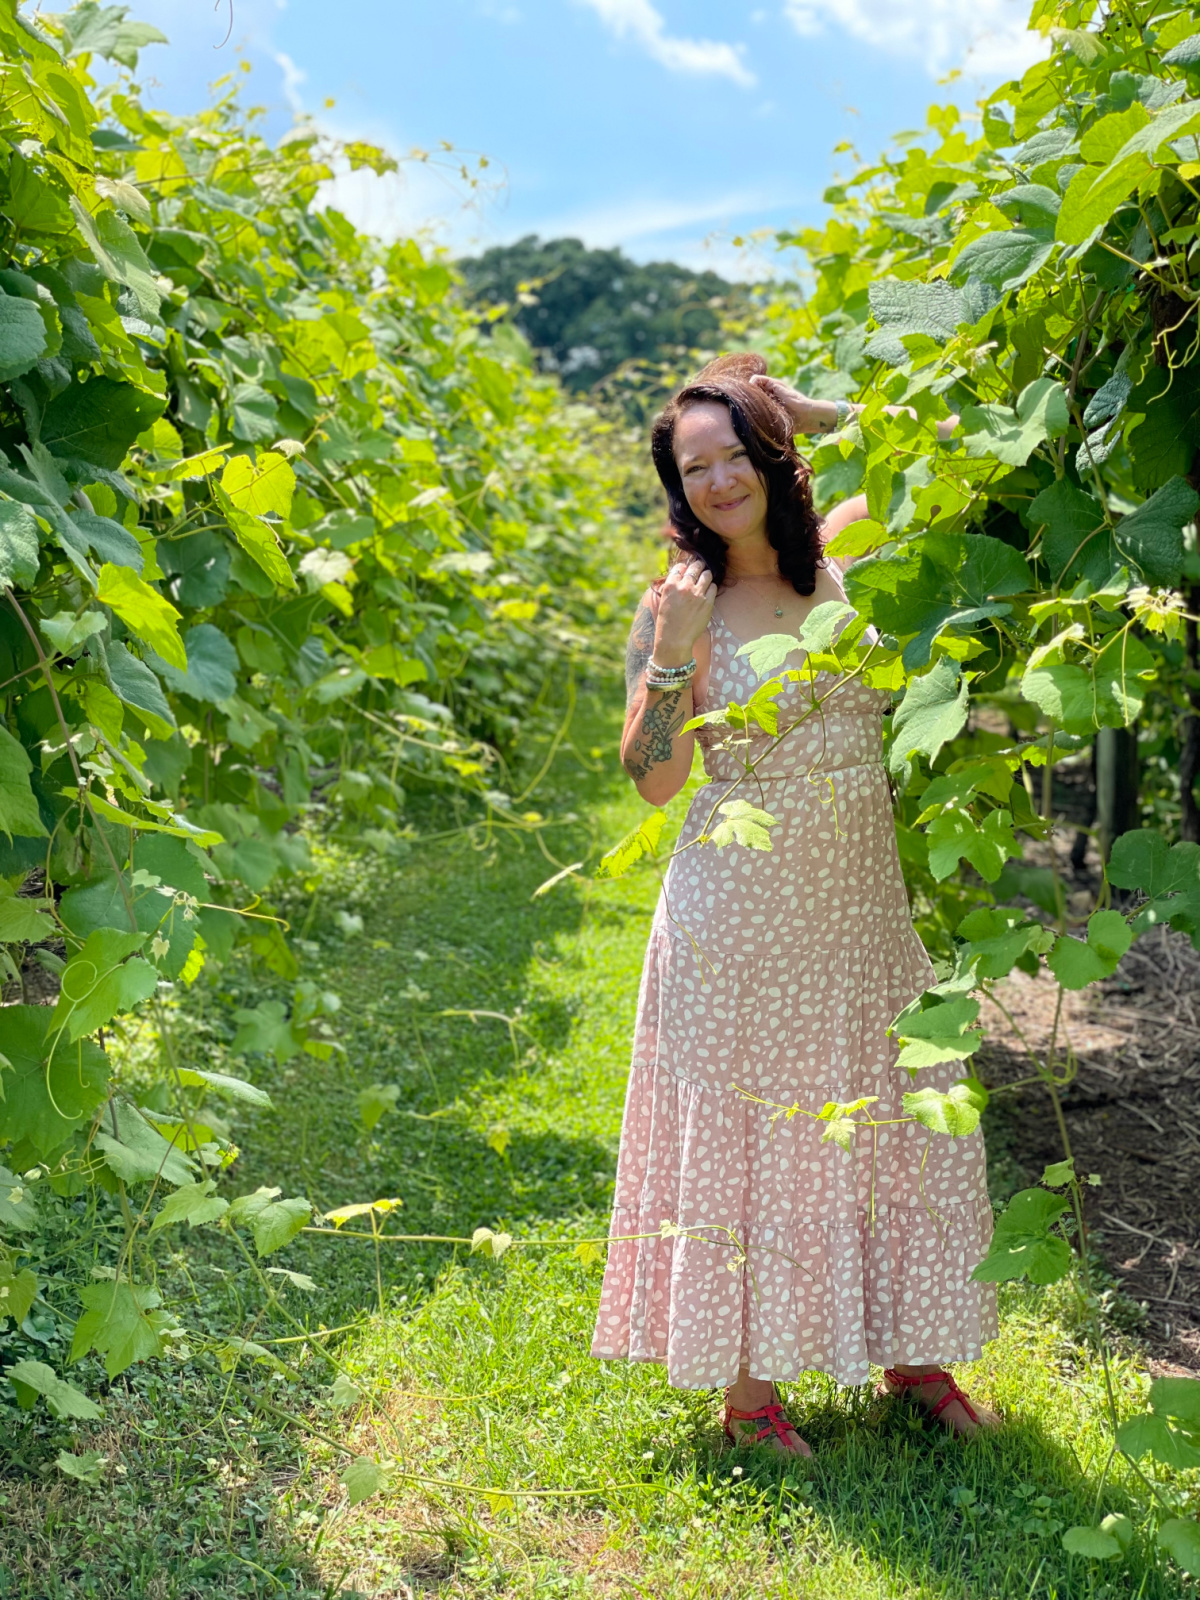 Jennifer in a vineyard in Georgia